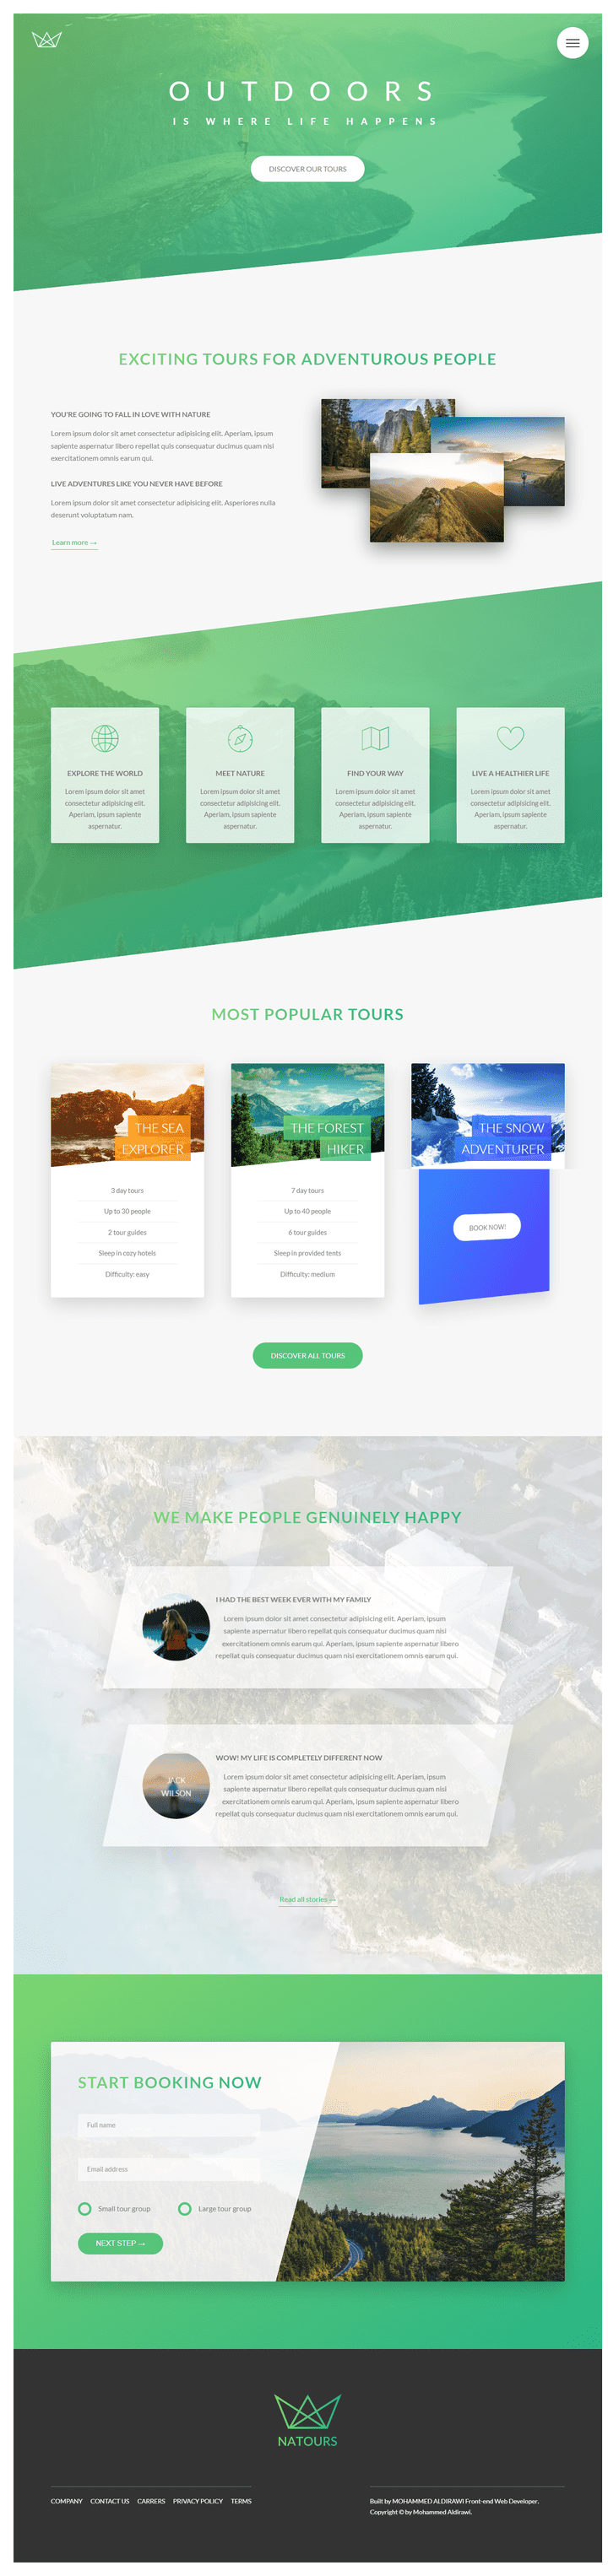 Natours - Platform to explore places of tourism